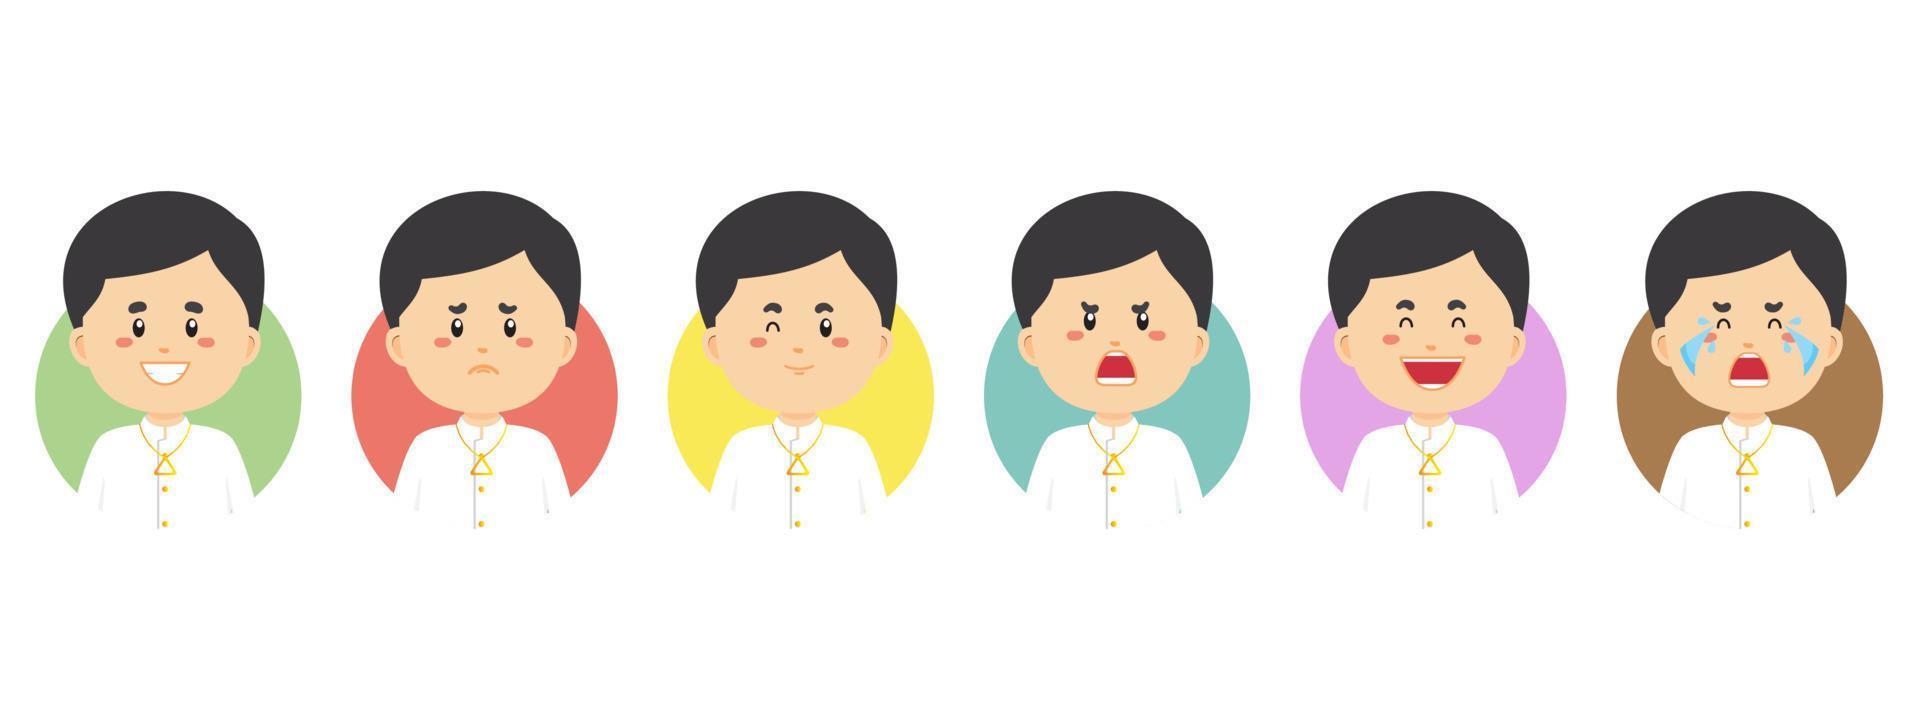 avatar de laos con varias expresiones vector